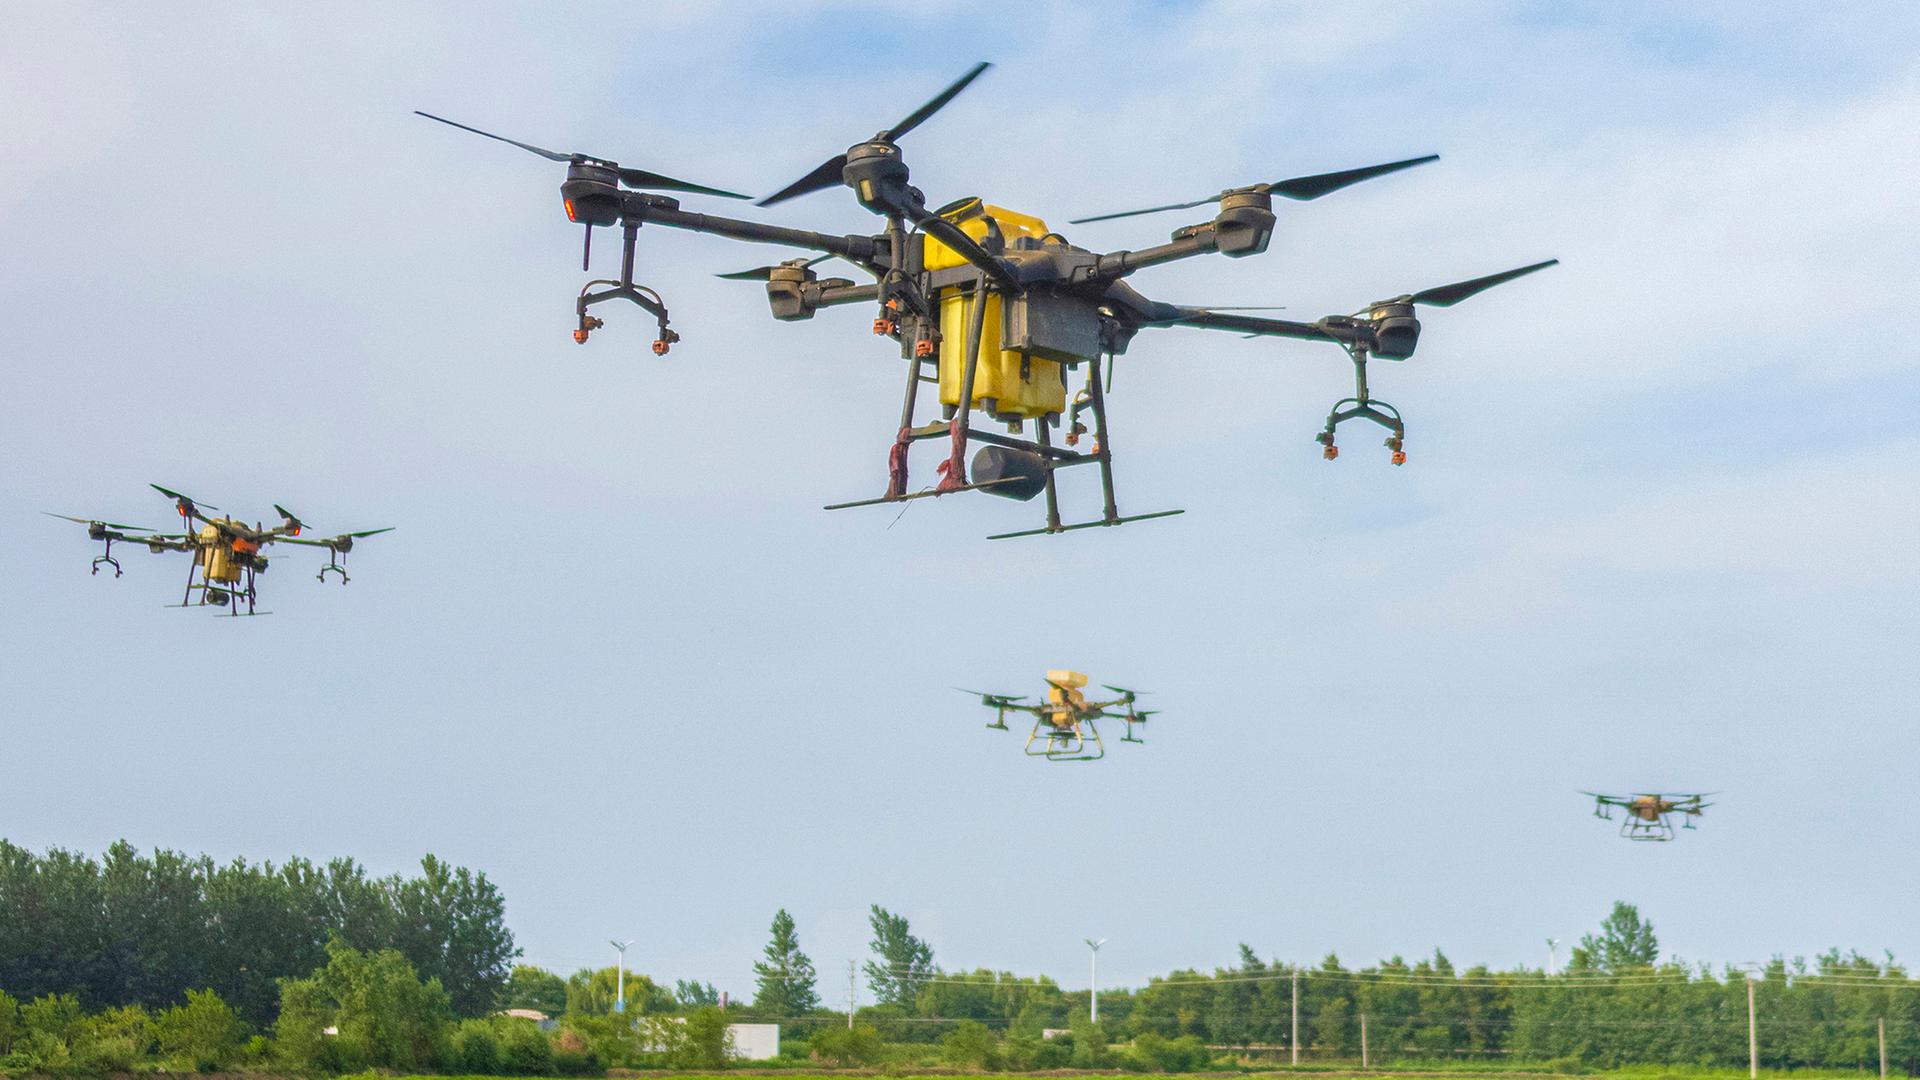 Zahlreiche Drohnen fliegen über einen landwirtschaftlich genutztes Feld.